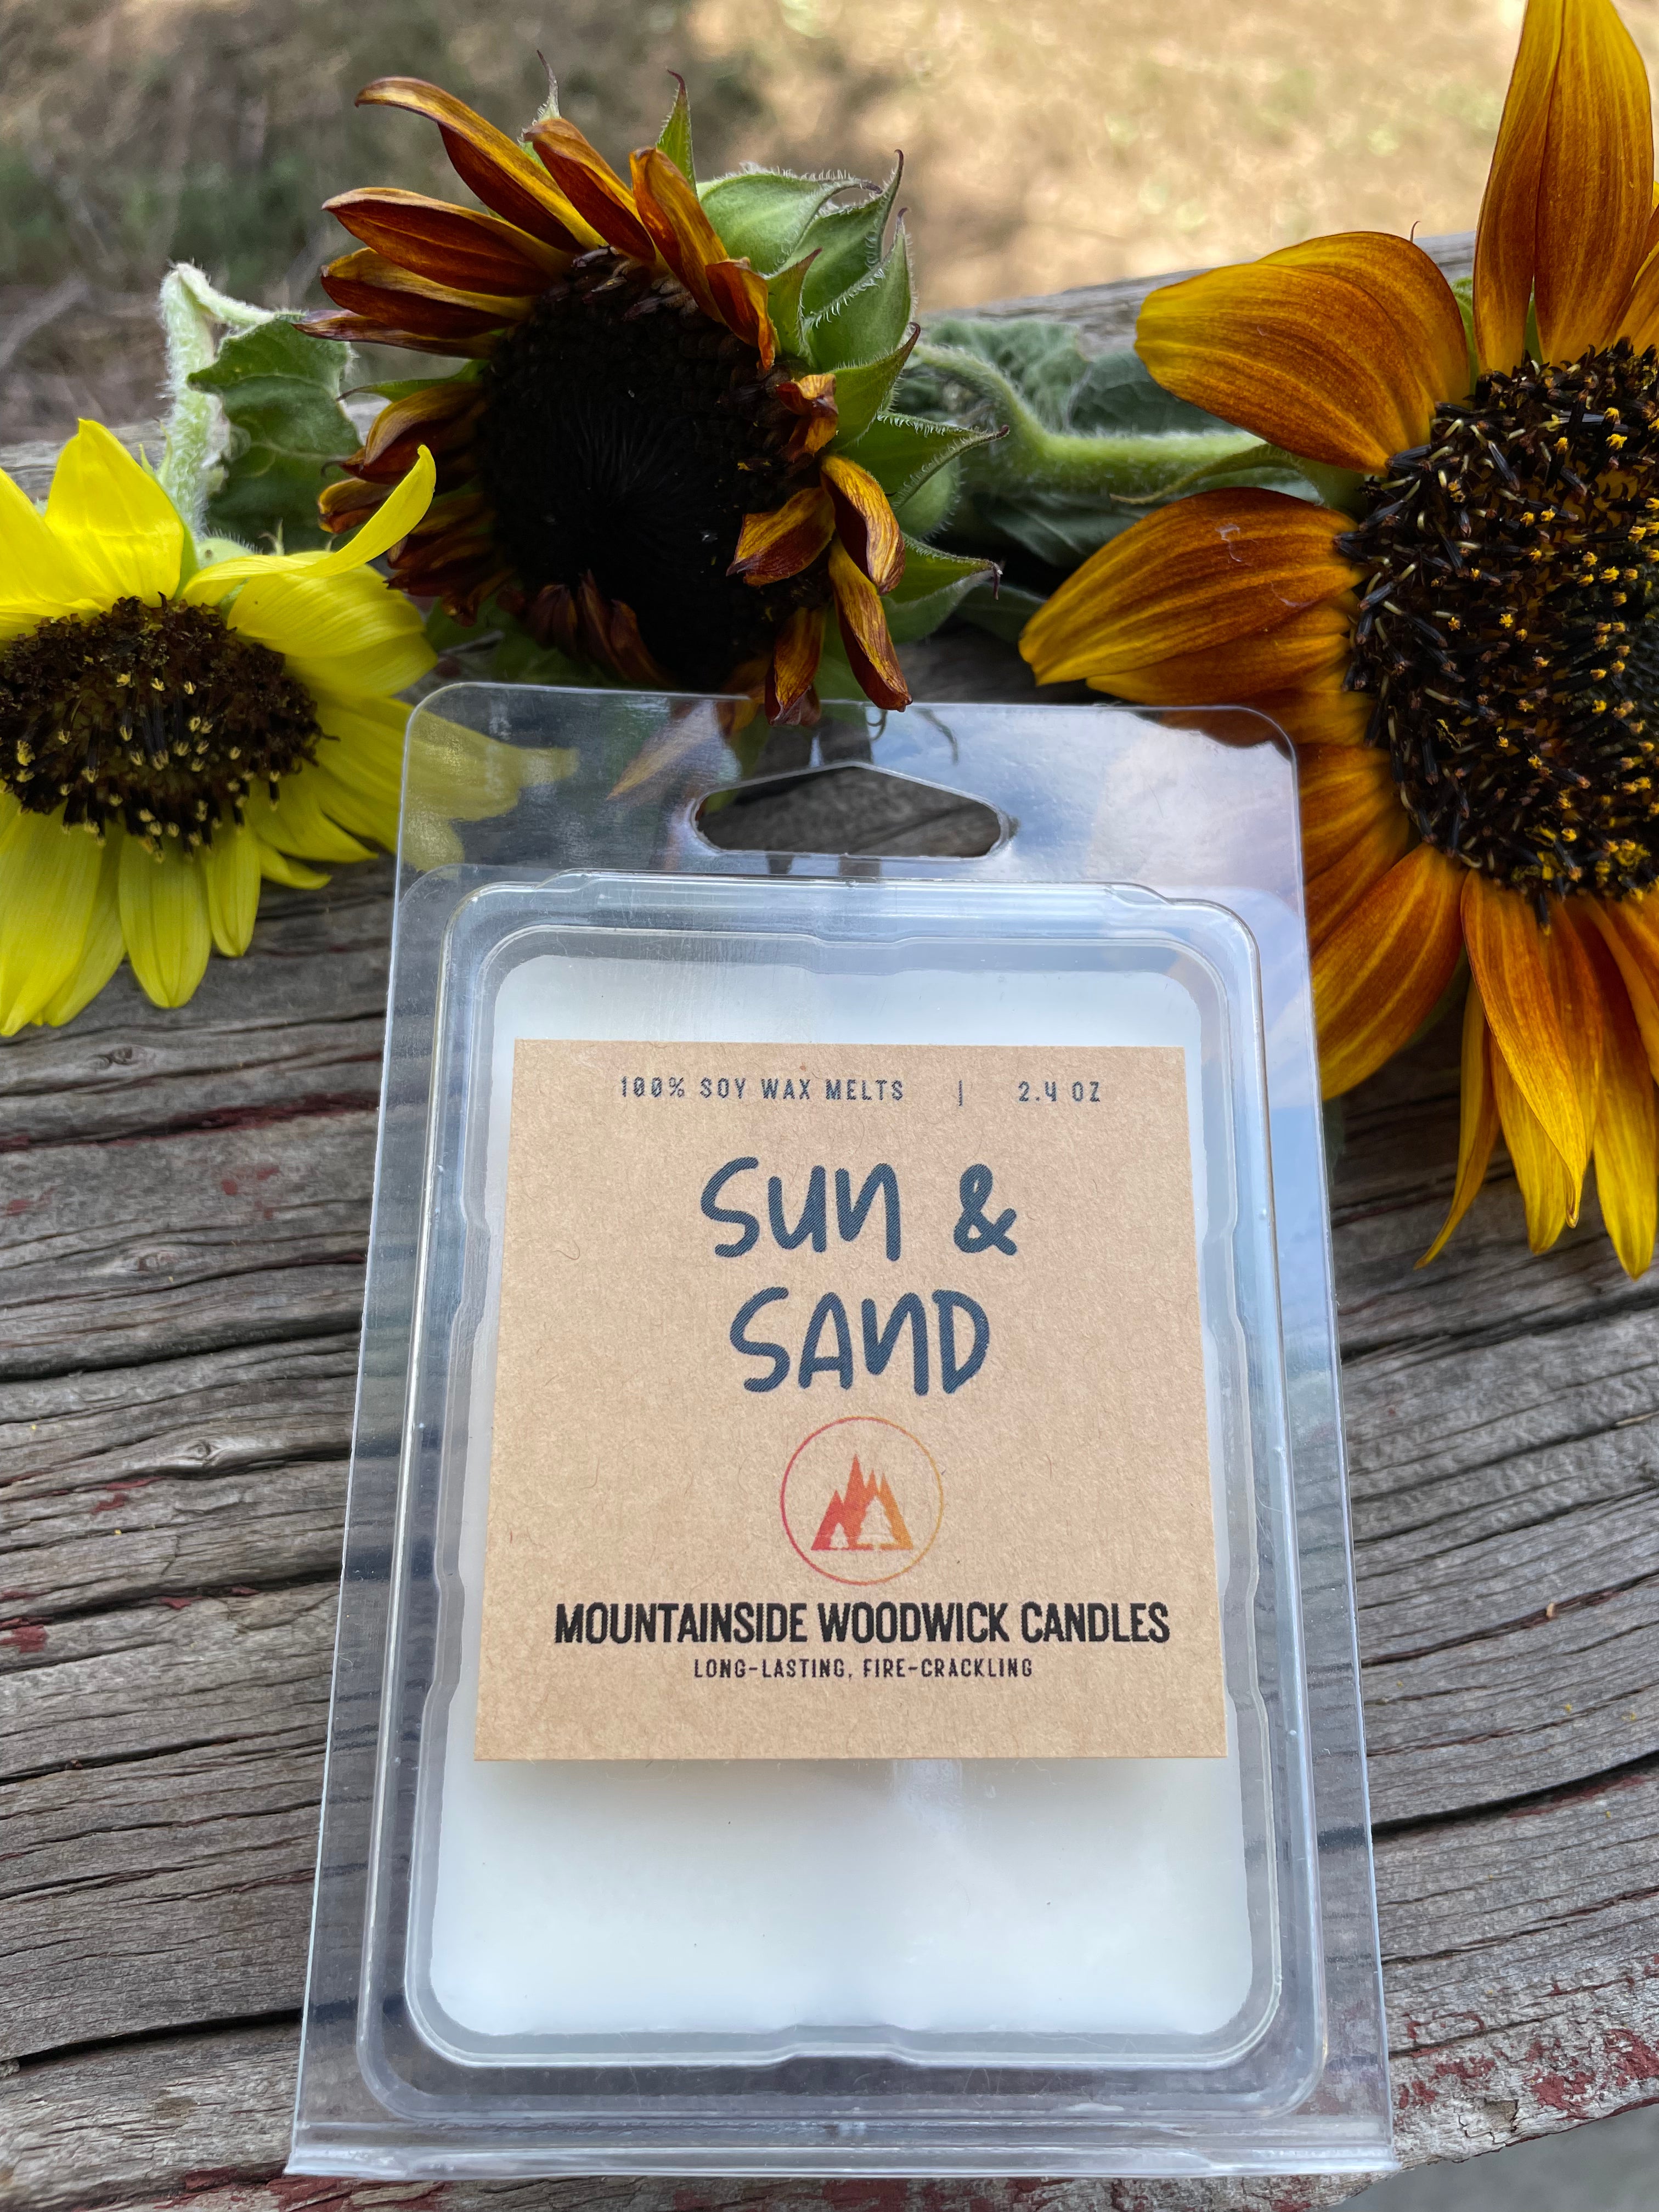 Sun & Sand (2.4 oz.) - Soy Wax Melts